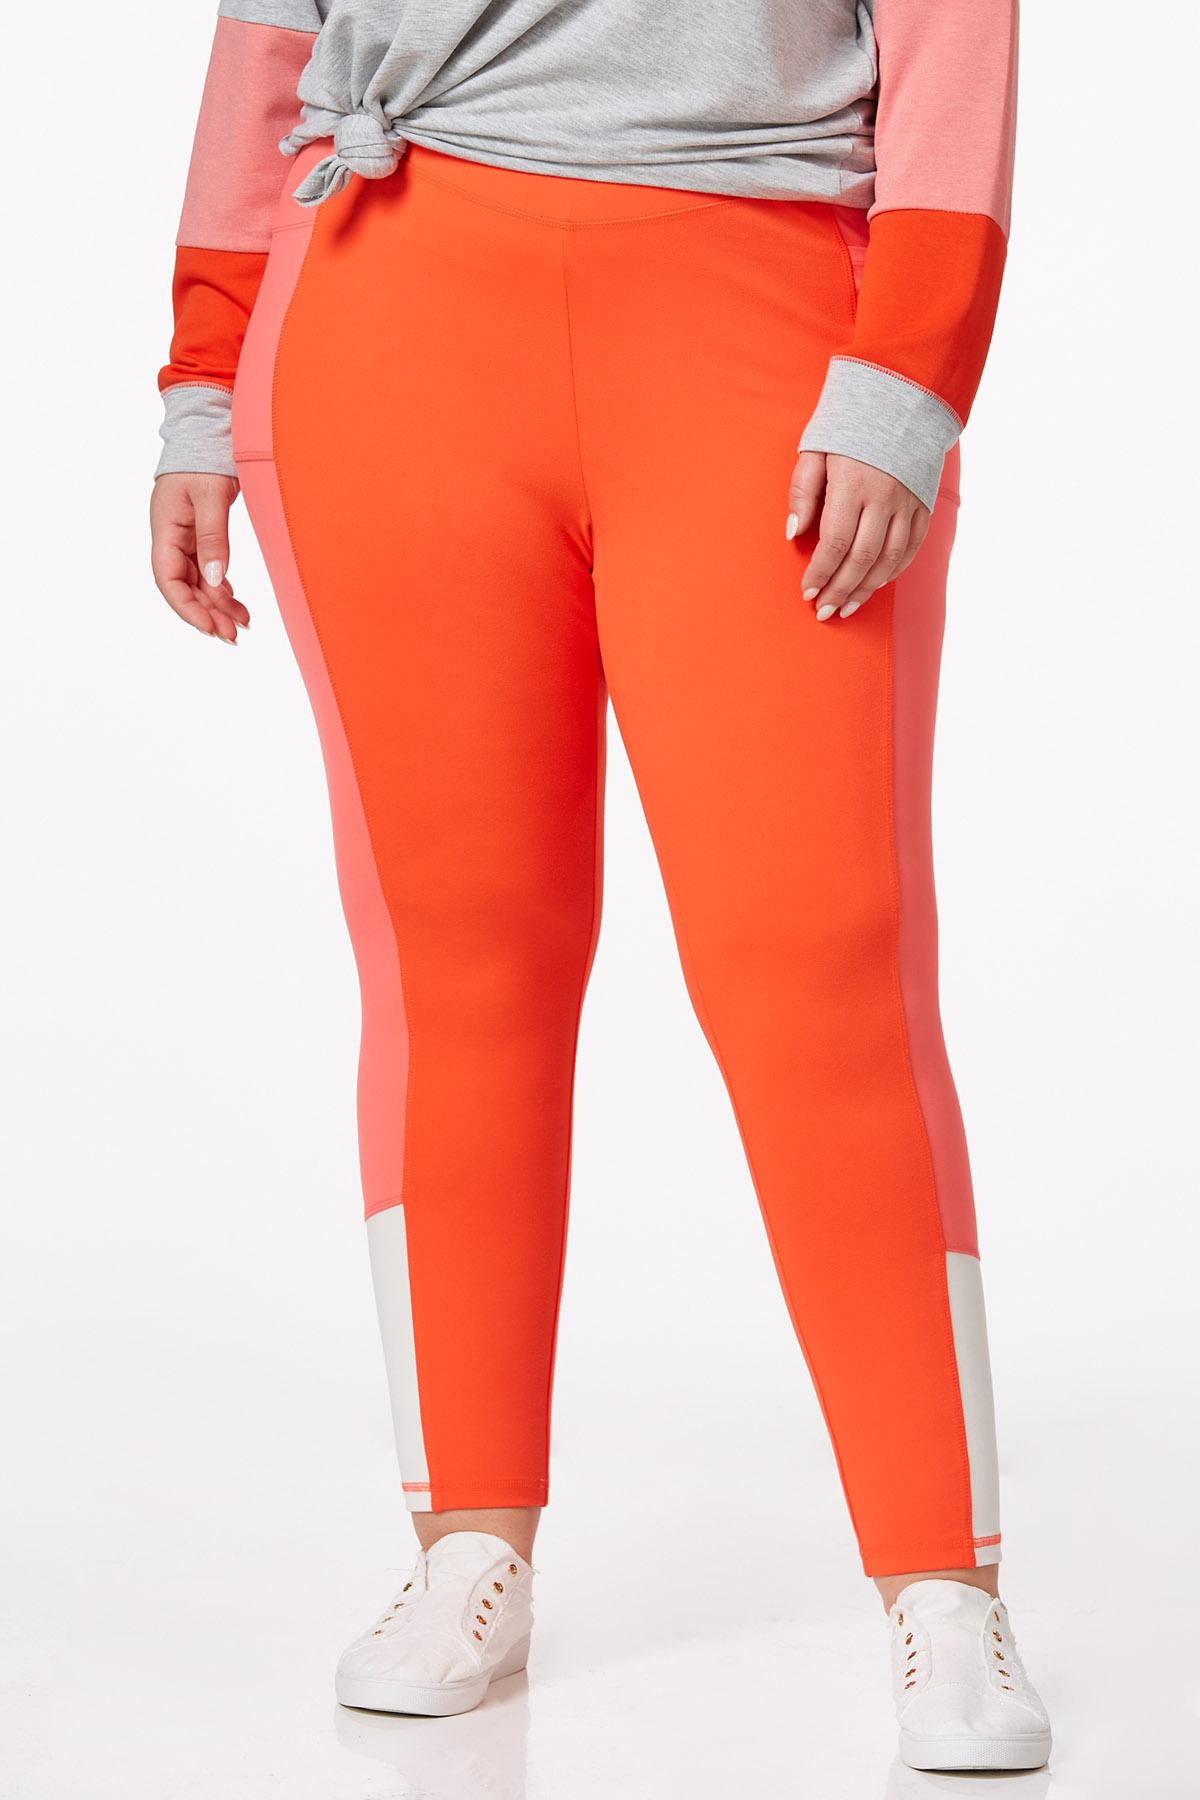 Cato Fashions  Cato Plus Size Orange Colorblock Leggings